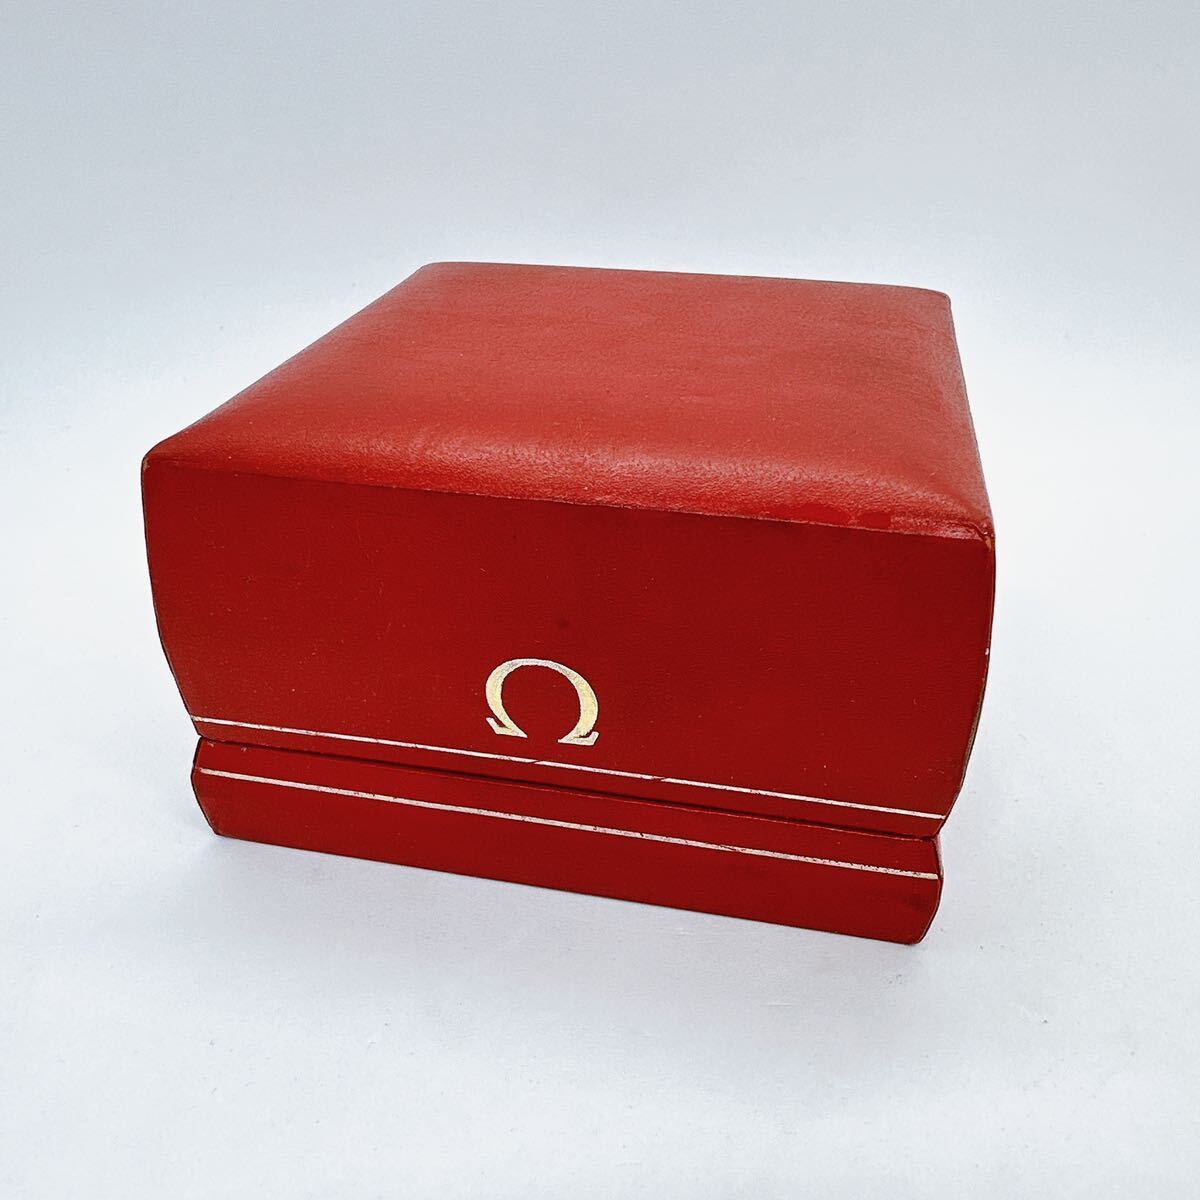 04027  Omega  OMEGA  коробка  ... коробка   кейс   коробка   оригинальный   наручные часы   винтажный    антиквариат 